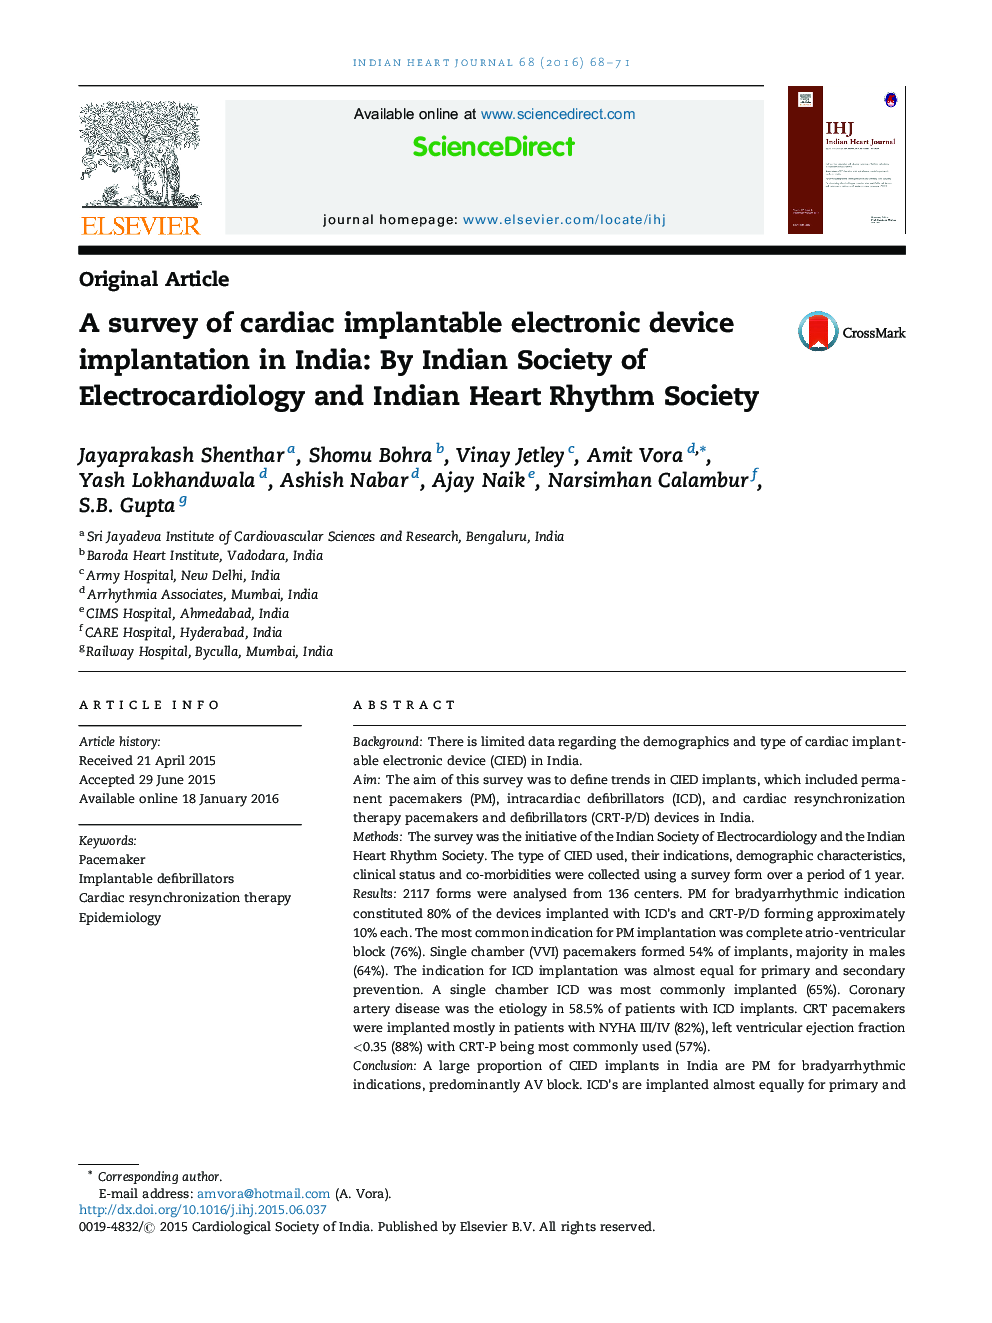 یک نظرسنجی از پیوند دستگاه ایمنی الکترونیکی قابل کشت قلبی در هند: توسط انجمن الکتروکاردیولوژی هند و انجمن ریتم قلب هند